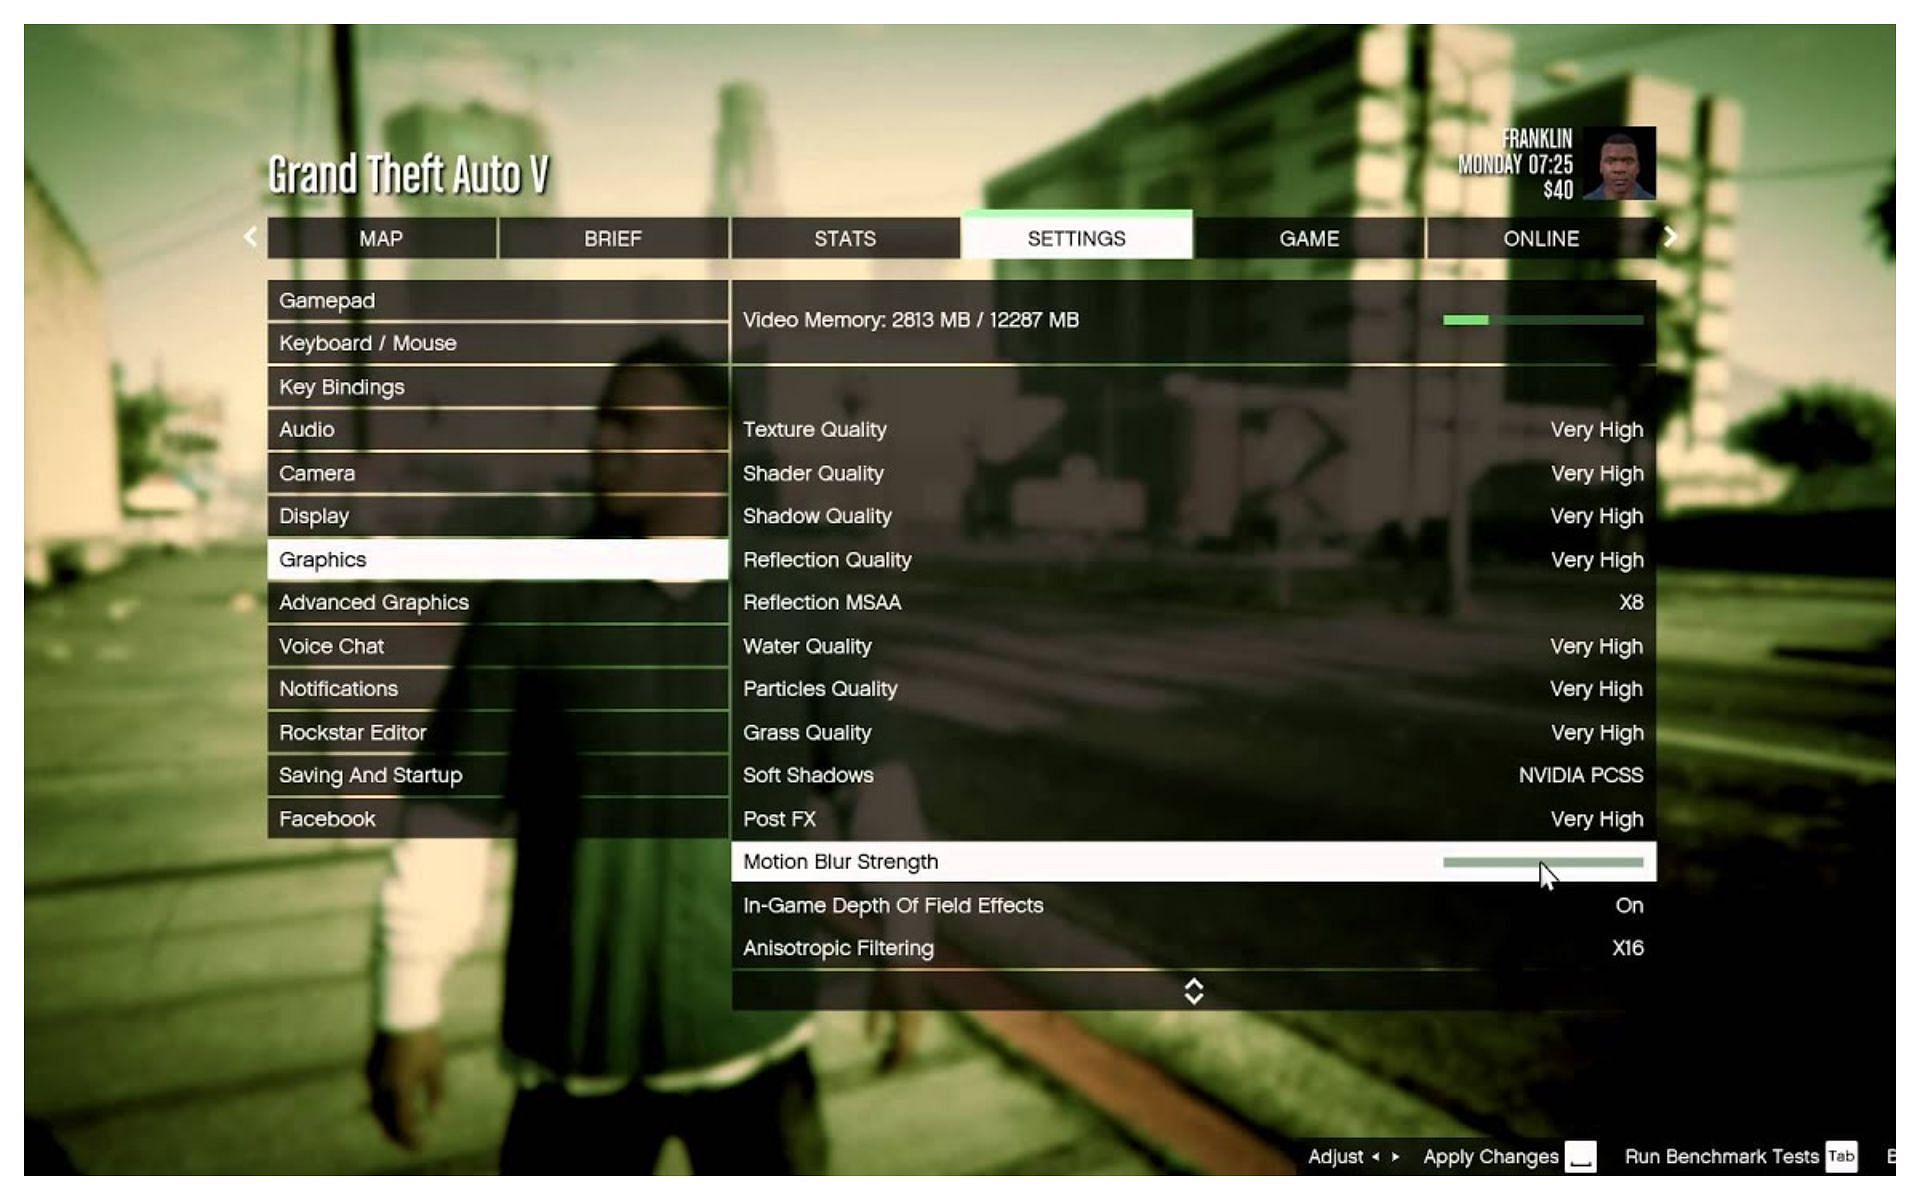 The in-game settings menu (Images via Rockstar Games)